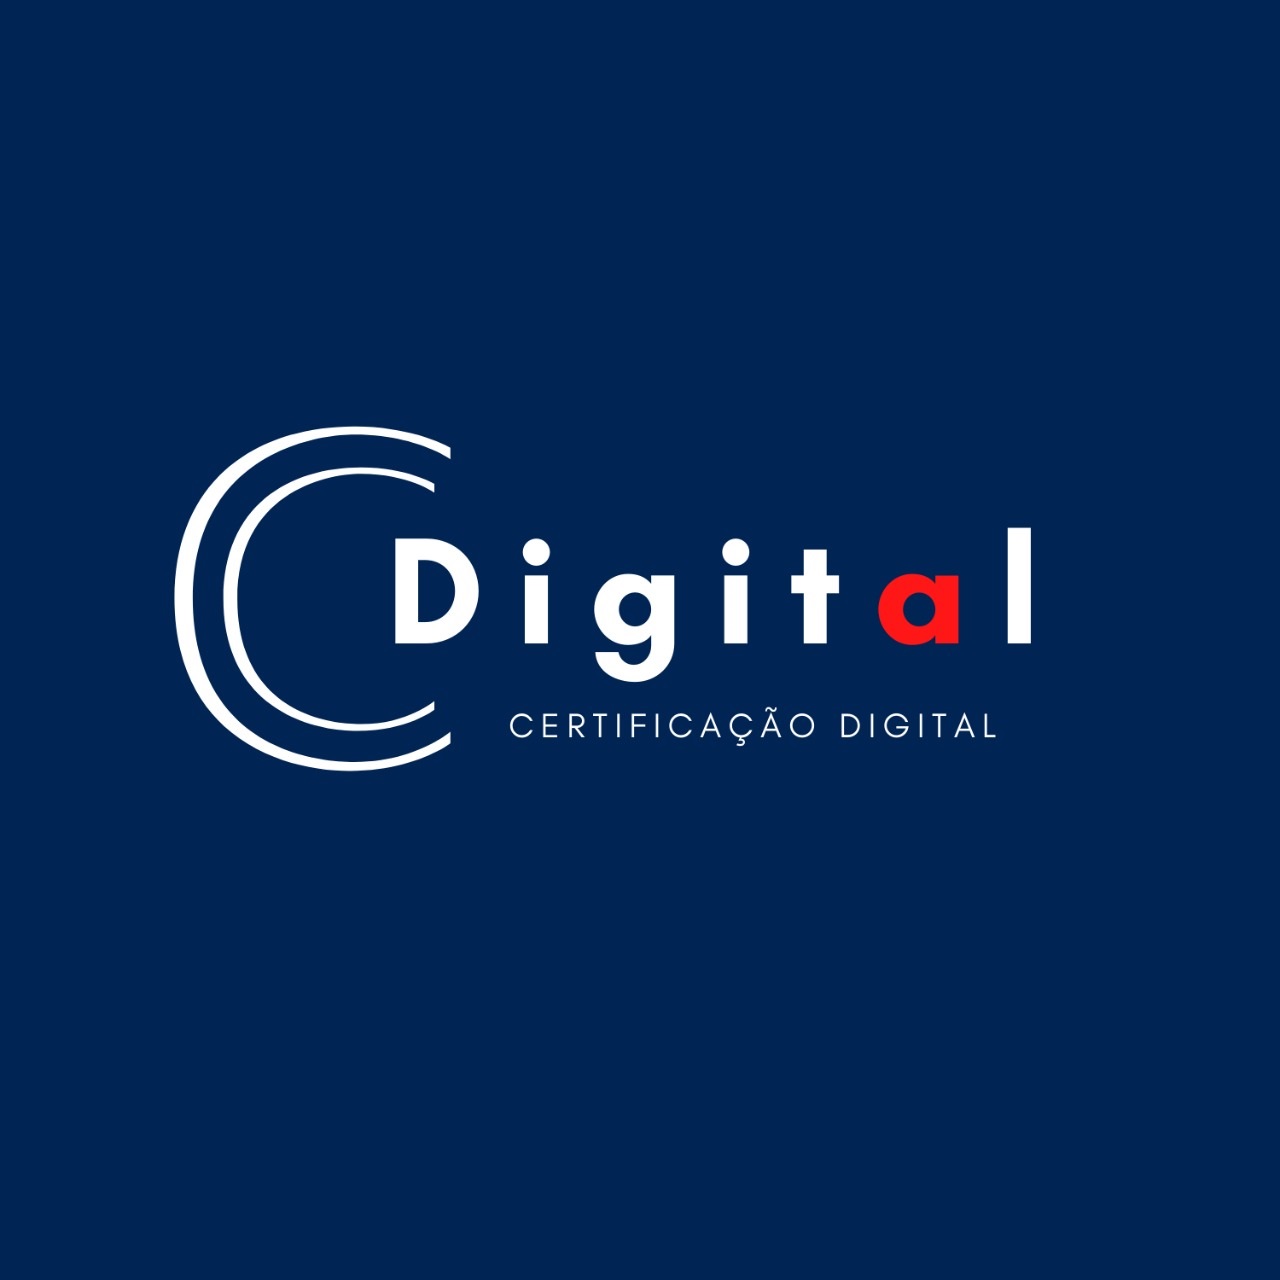 Logotipo do parceiro AR Cdigital &#8211; CS Contadores Associados &#8211; 20%